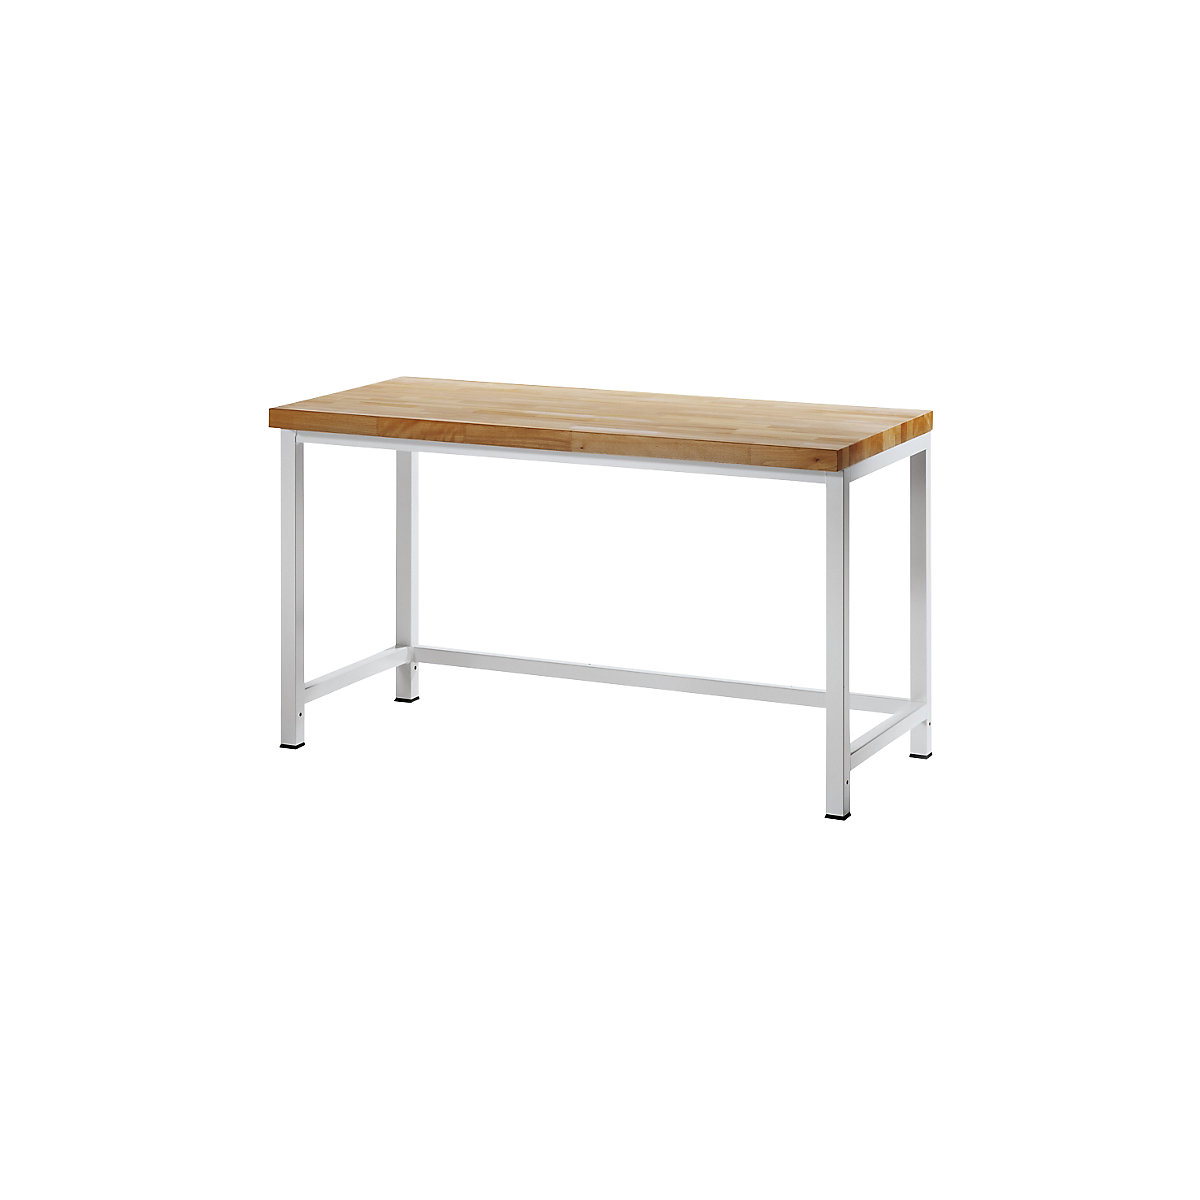 Dílenský stůl s rámovou konstrukcí – RAU, 1 příčná výztuha, hloubka 700 mm, šířka 1500 mm-9